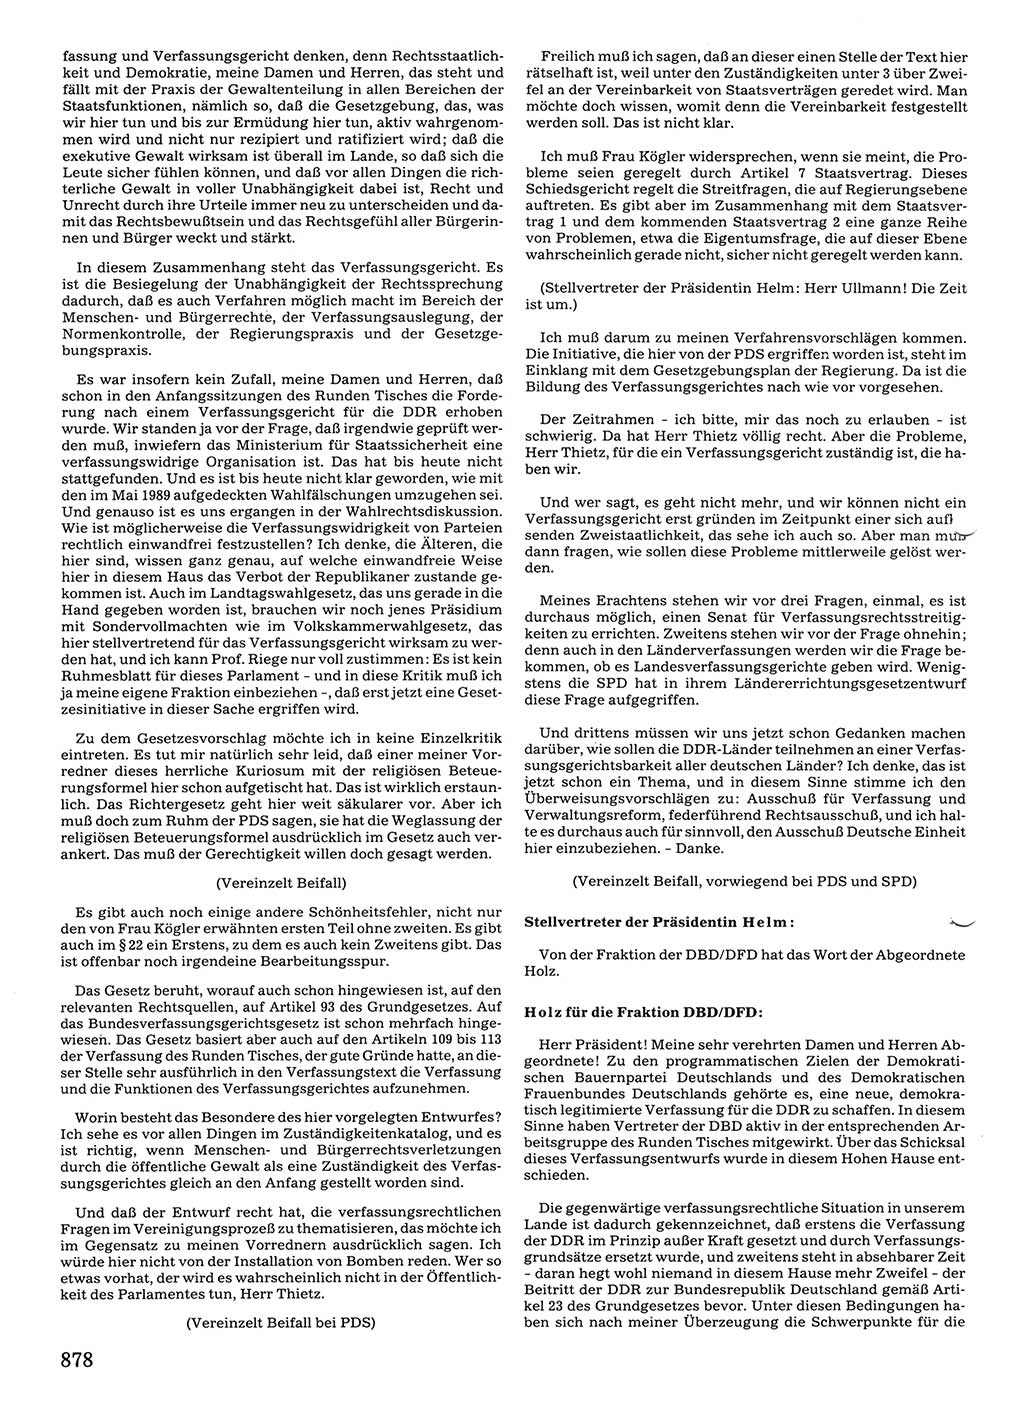 Tagungen der Volkskammer (VK) der Deutschen Demokratischen Republik (DDR), 10. Wahlperiode 1990, Seite 878 (VK. DDR 10. WP. 1990, Prot. Tg. 1-38, 5.4.-2.10.1990, S. 878)